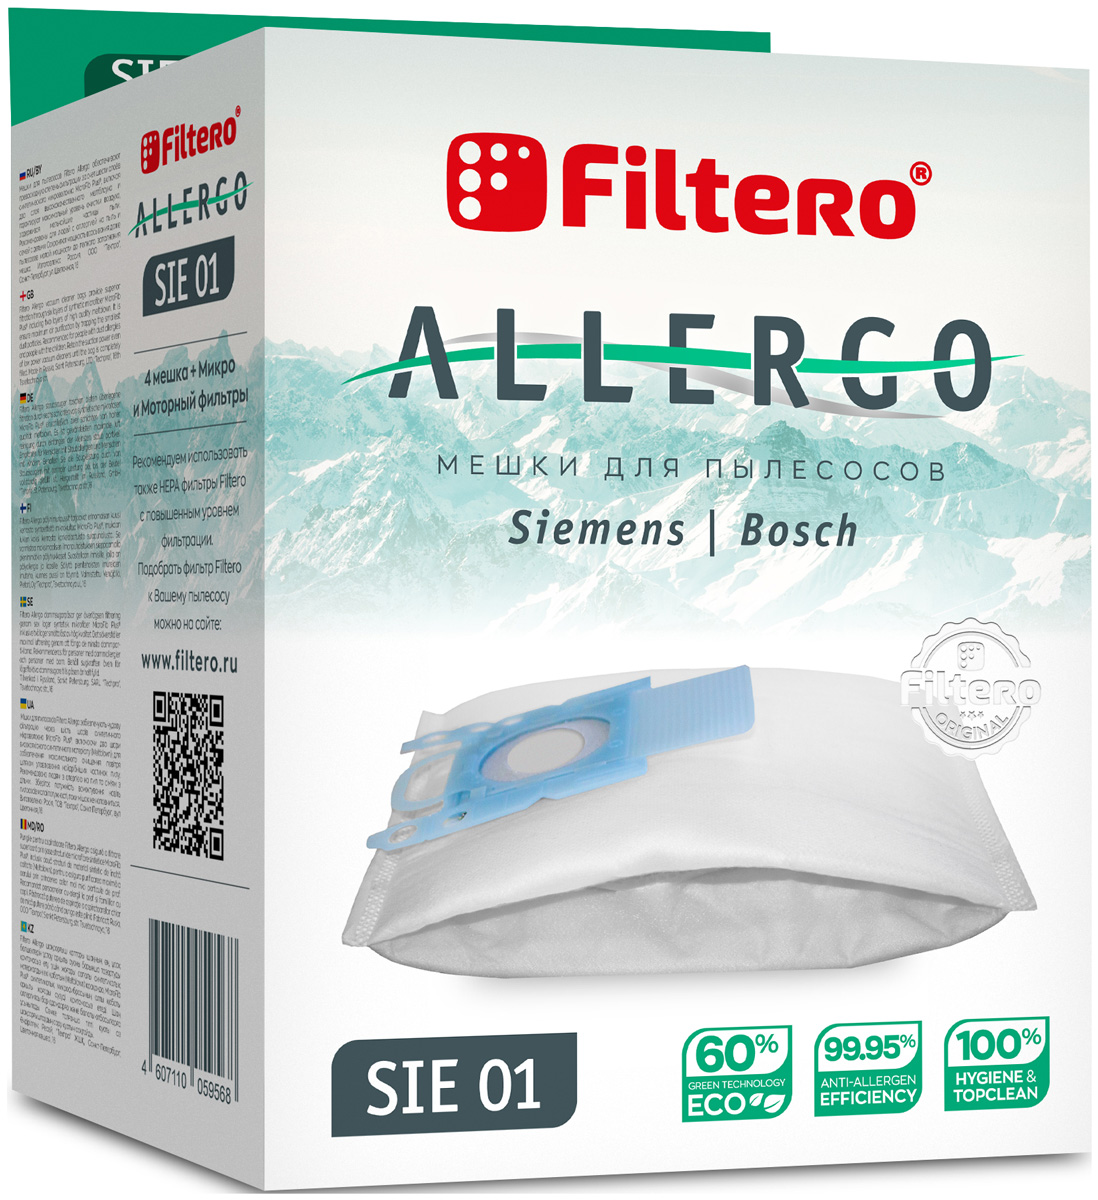 Пылесборники Filtero SIE 01 Allergo 4 шт. + моторный фильтр и микрофильтр пылесборники filtero fls 01 s bag 4 allergo 4 шт моторный и микрофильтр